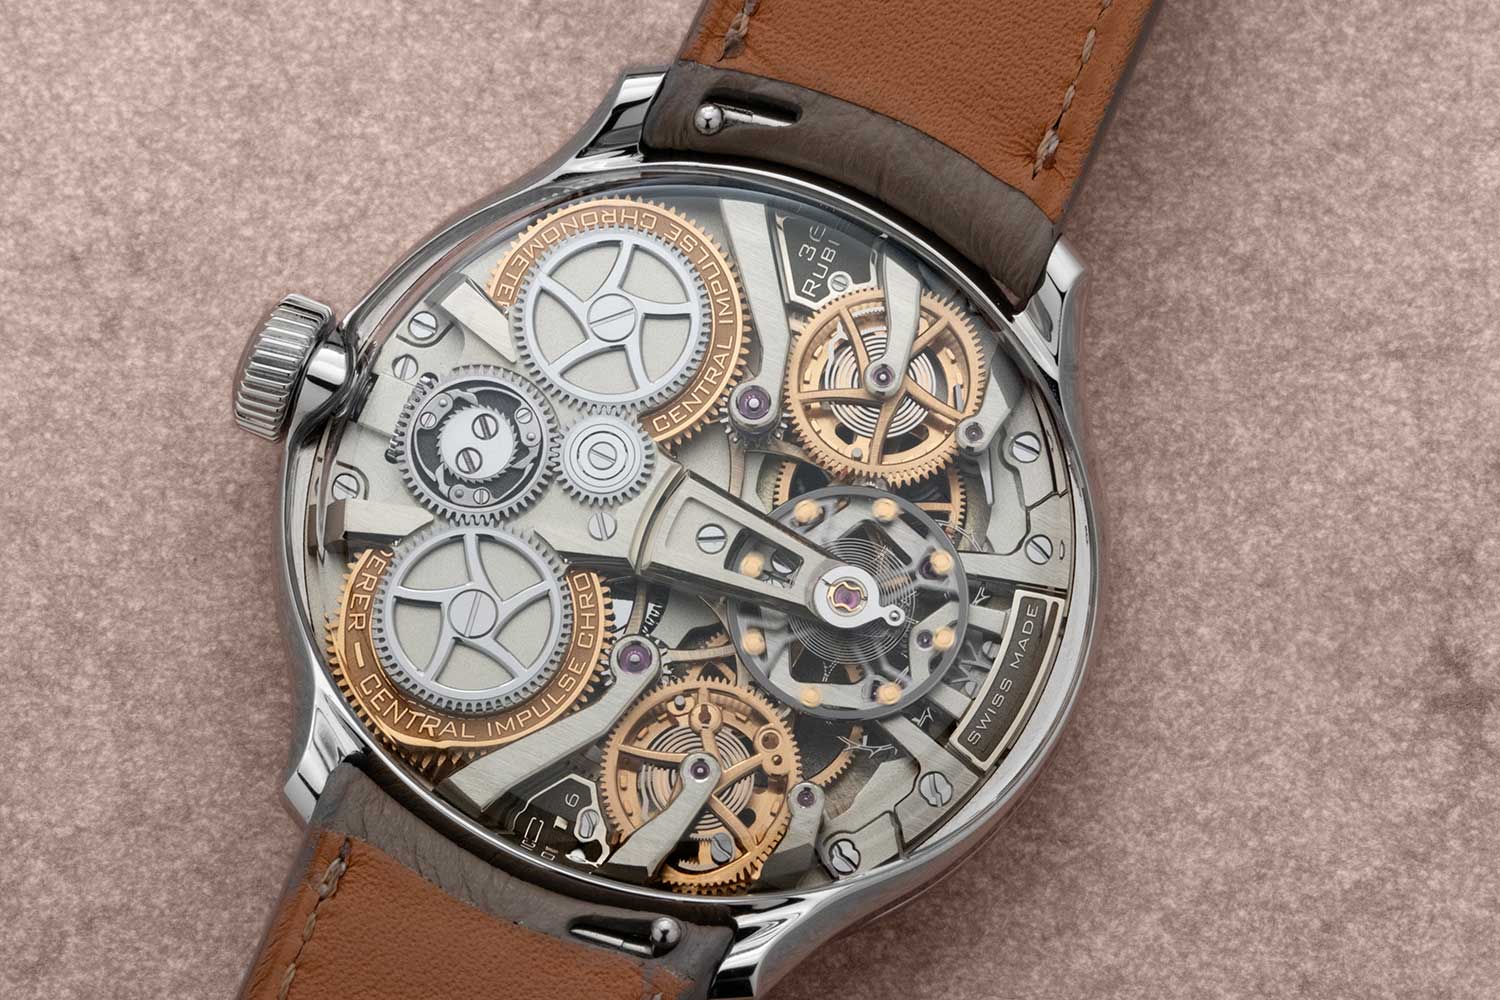 Bernhard Lederer Central Impulse Chronometer 39mm (Image: Revolution©️)